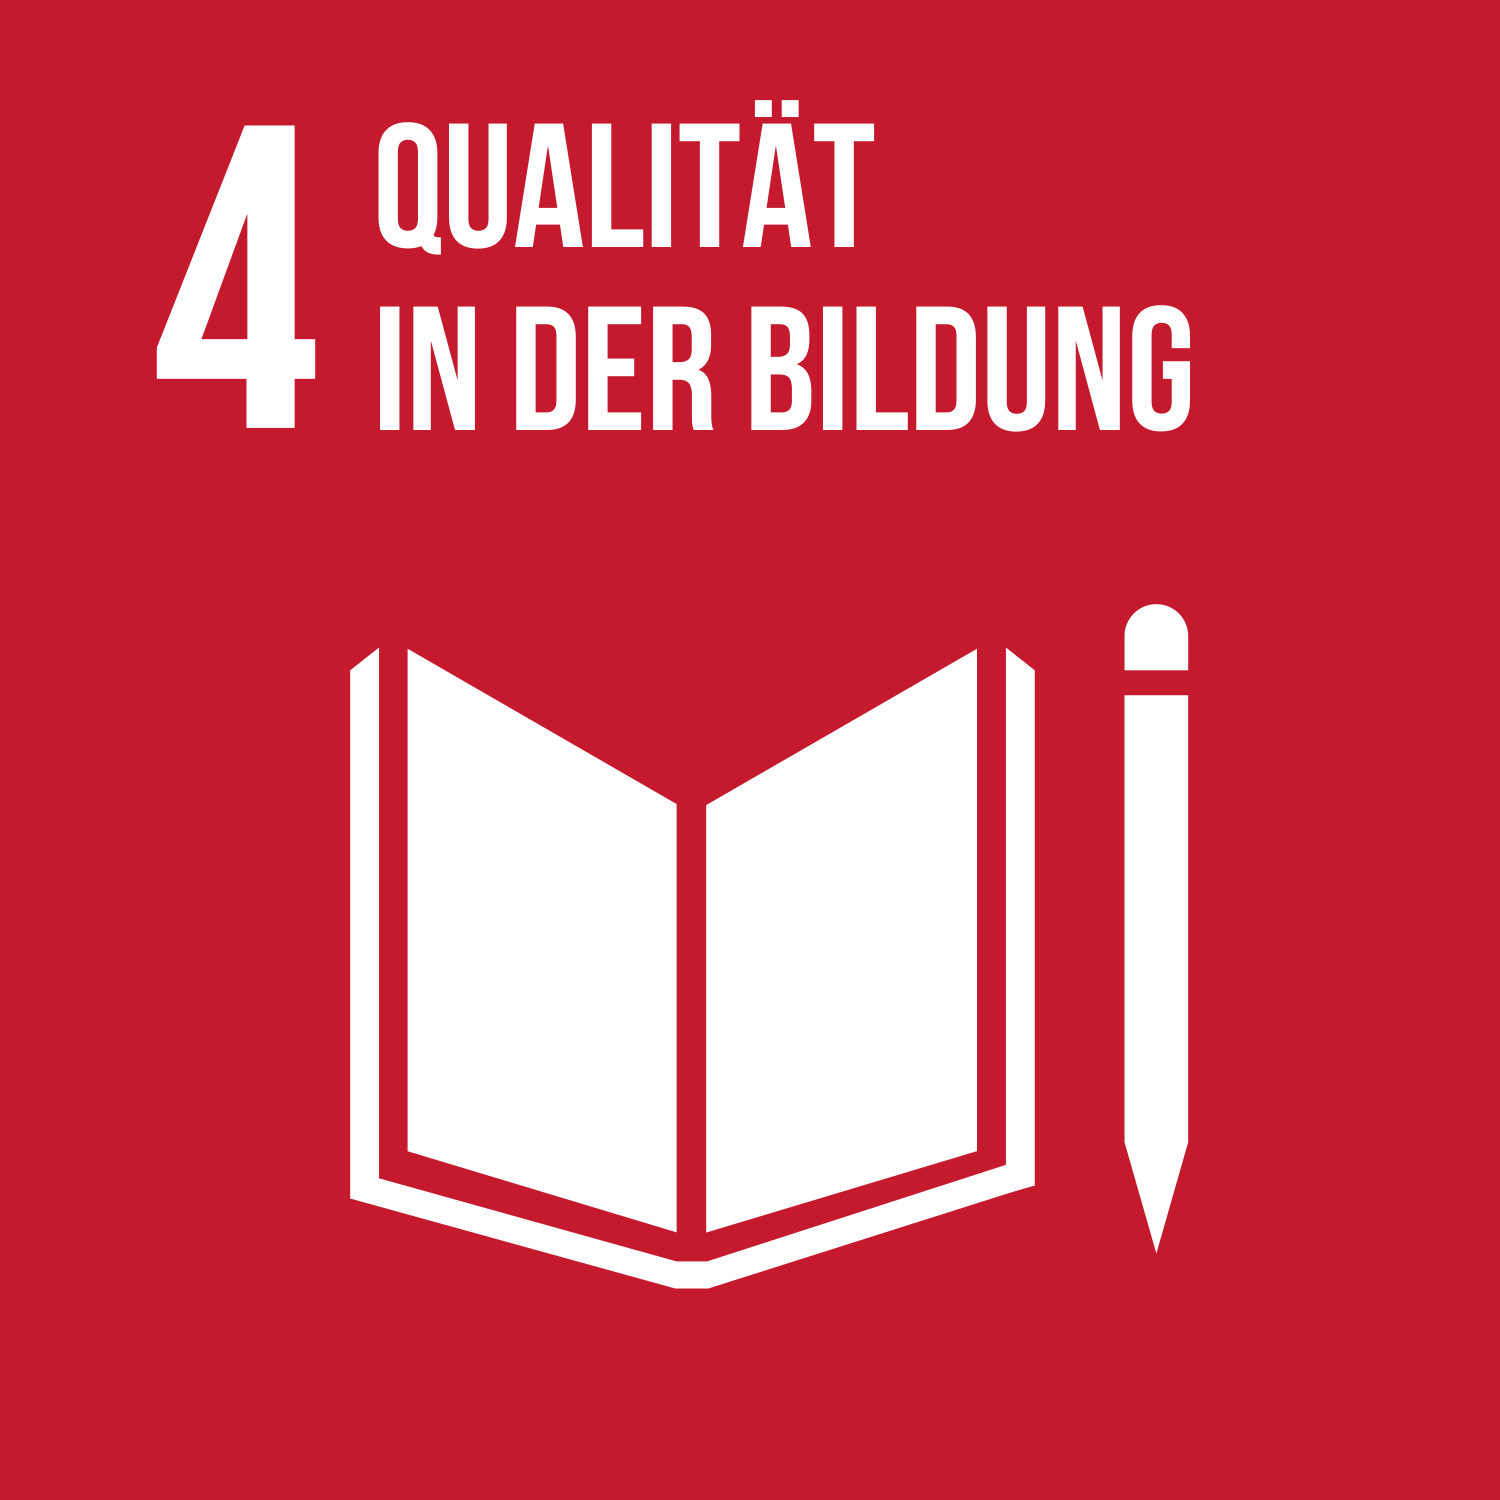 SDG4: Qualität in der Bildung